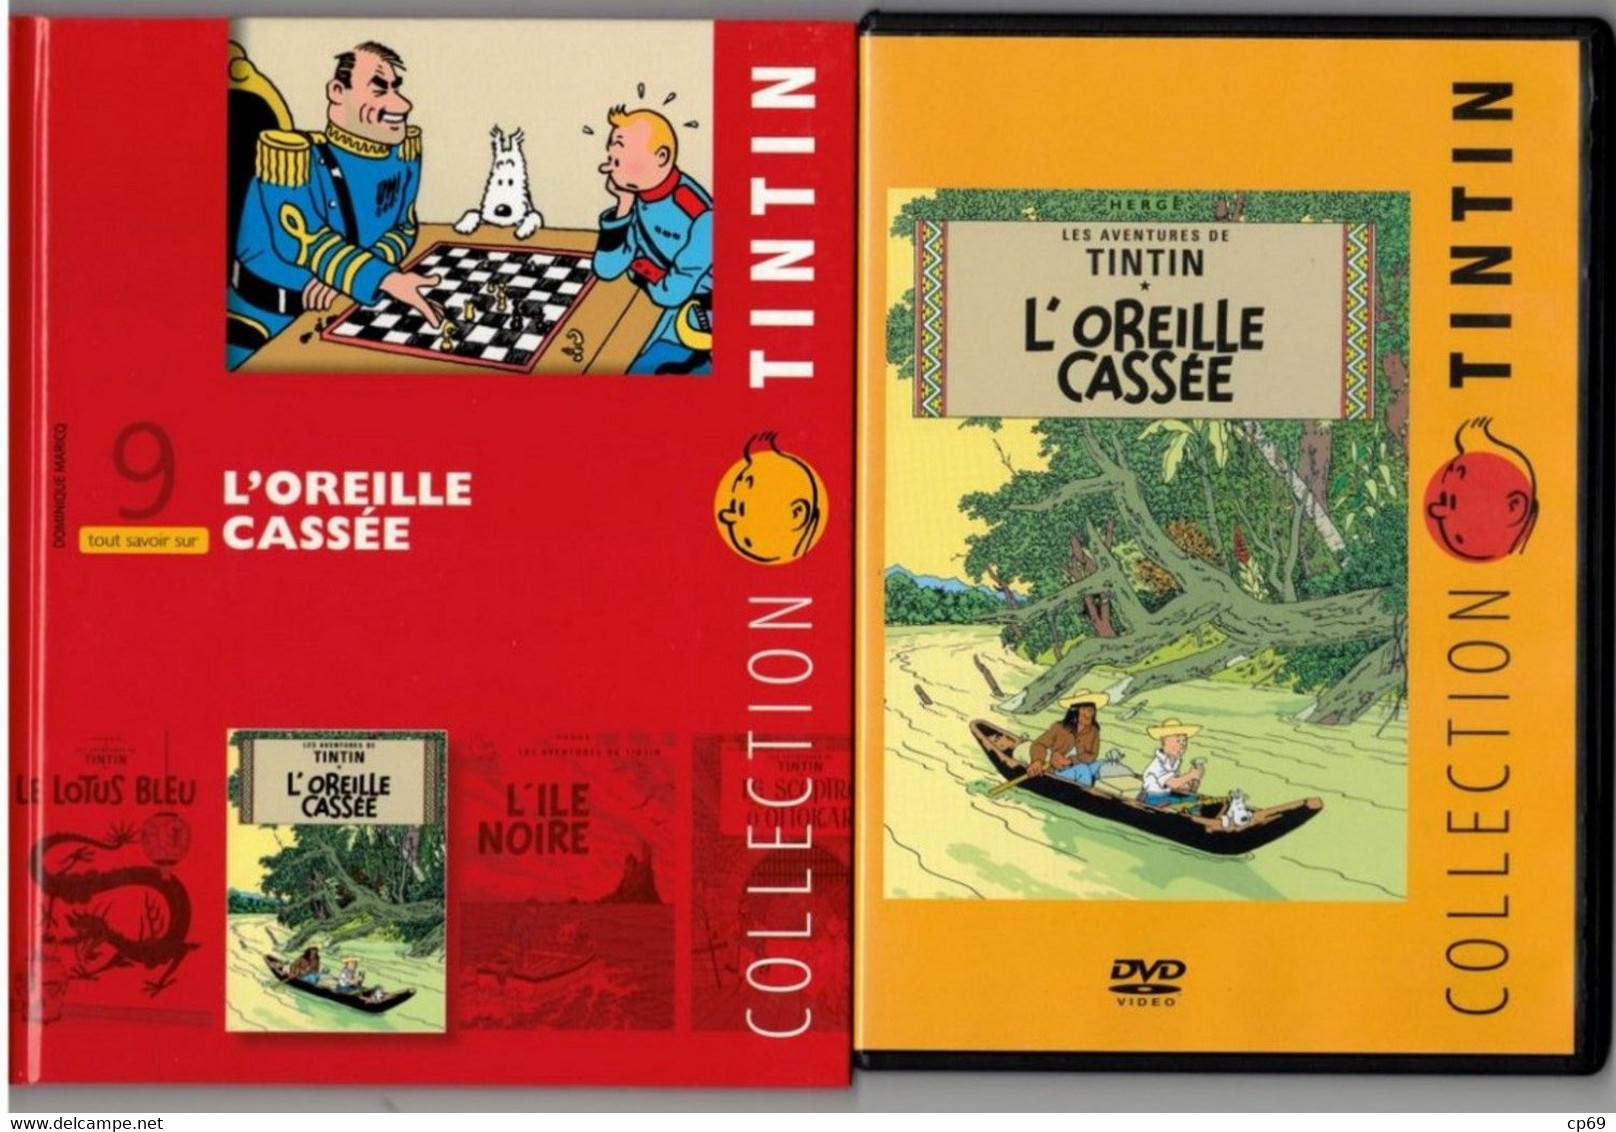 Tintin Hergé / Moulinsart 2010 Milou Chien Dog Cane L'Oreille Cassée N°9 DVD + Livret Explicatif En B.Etat - Dibujos Animados